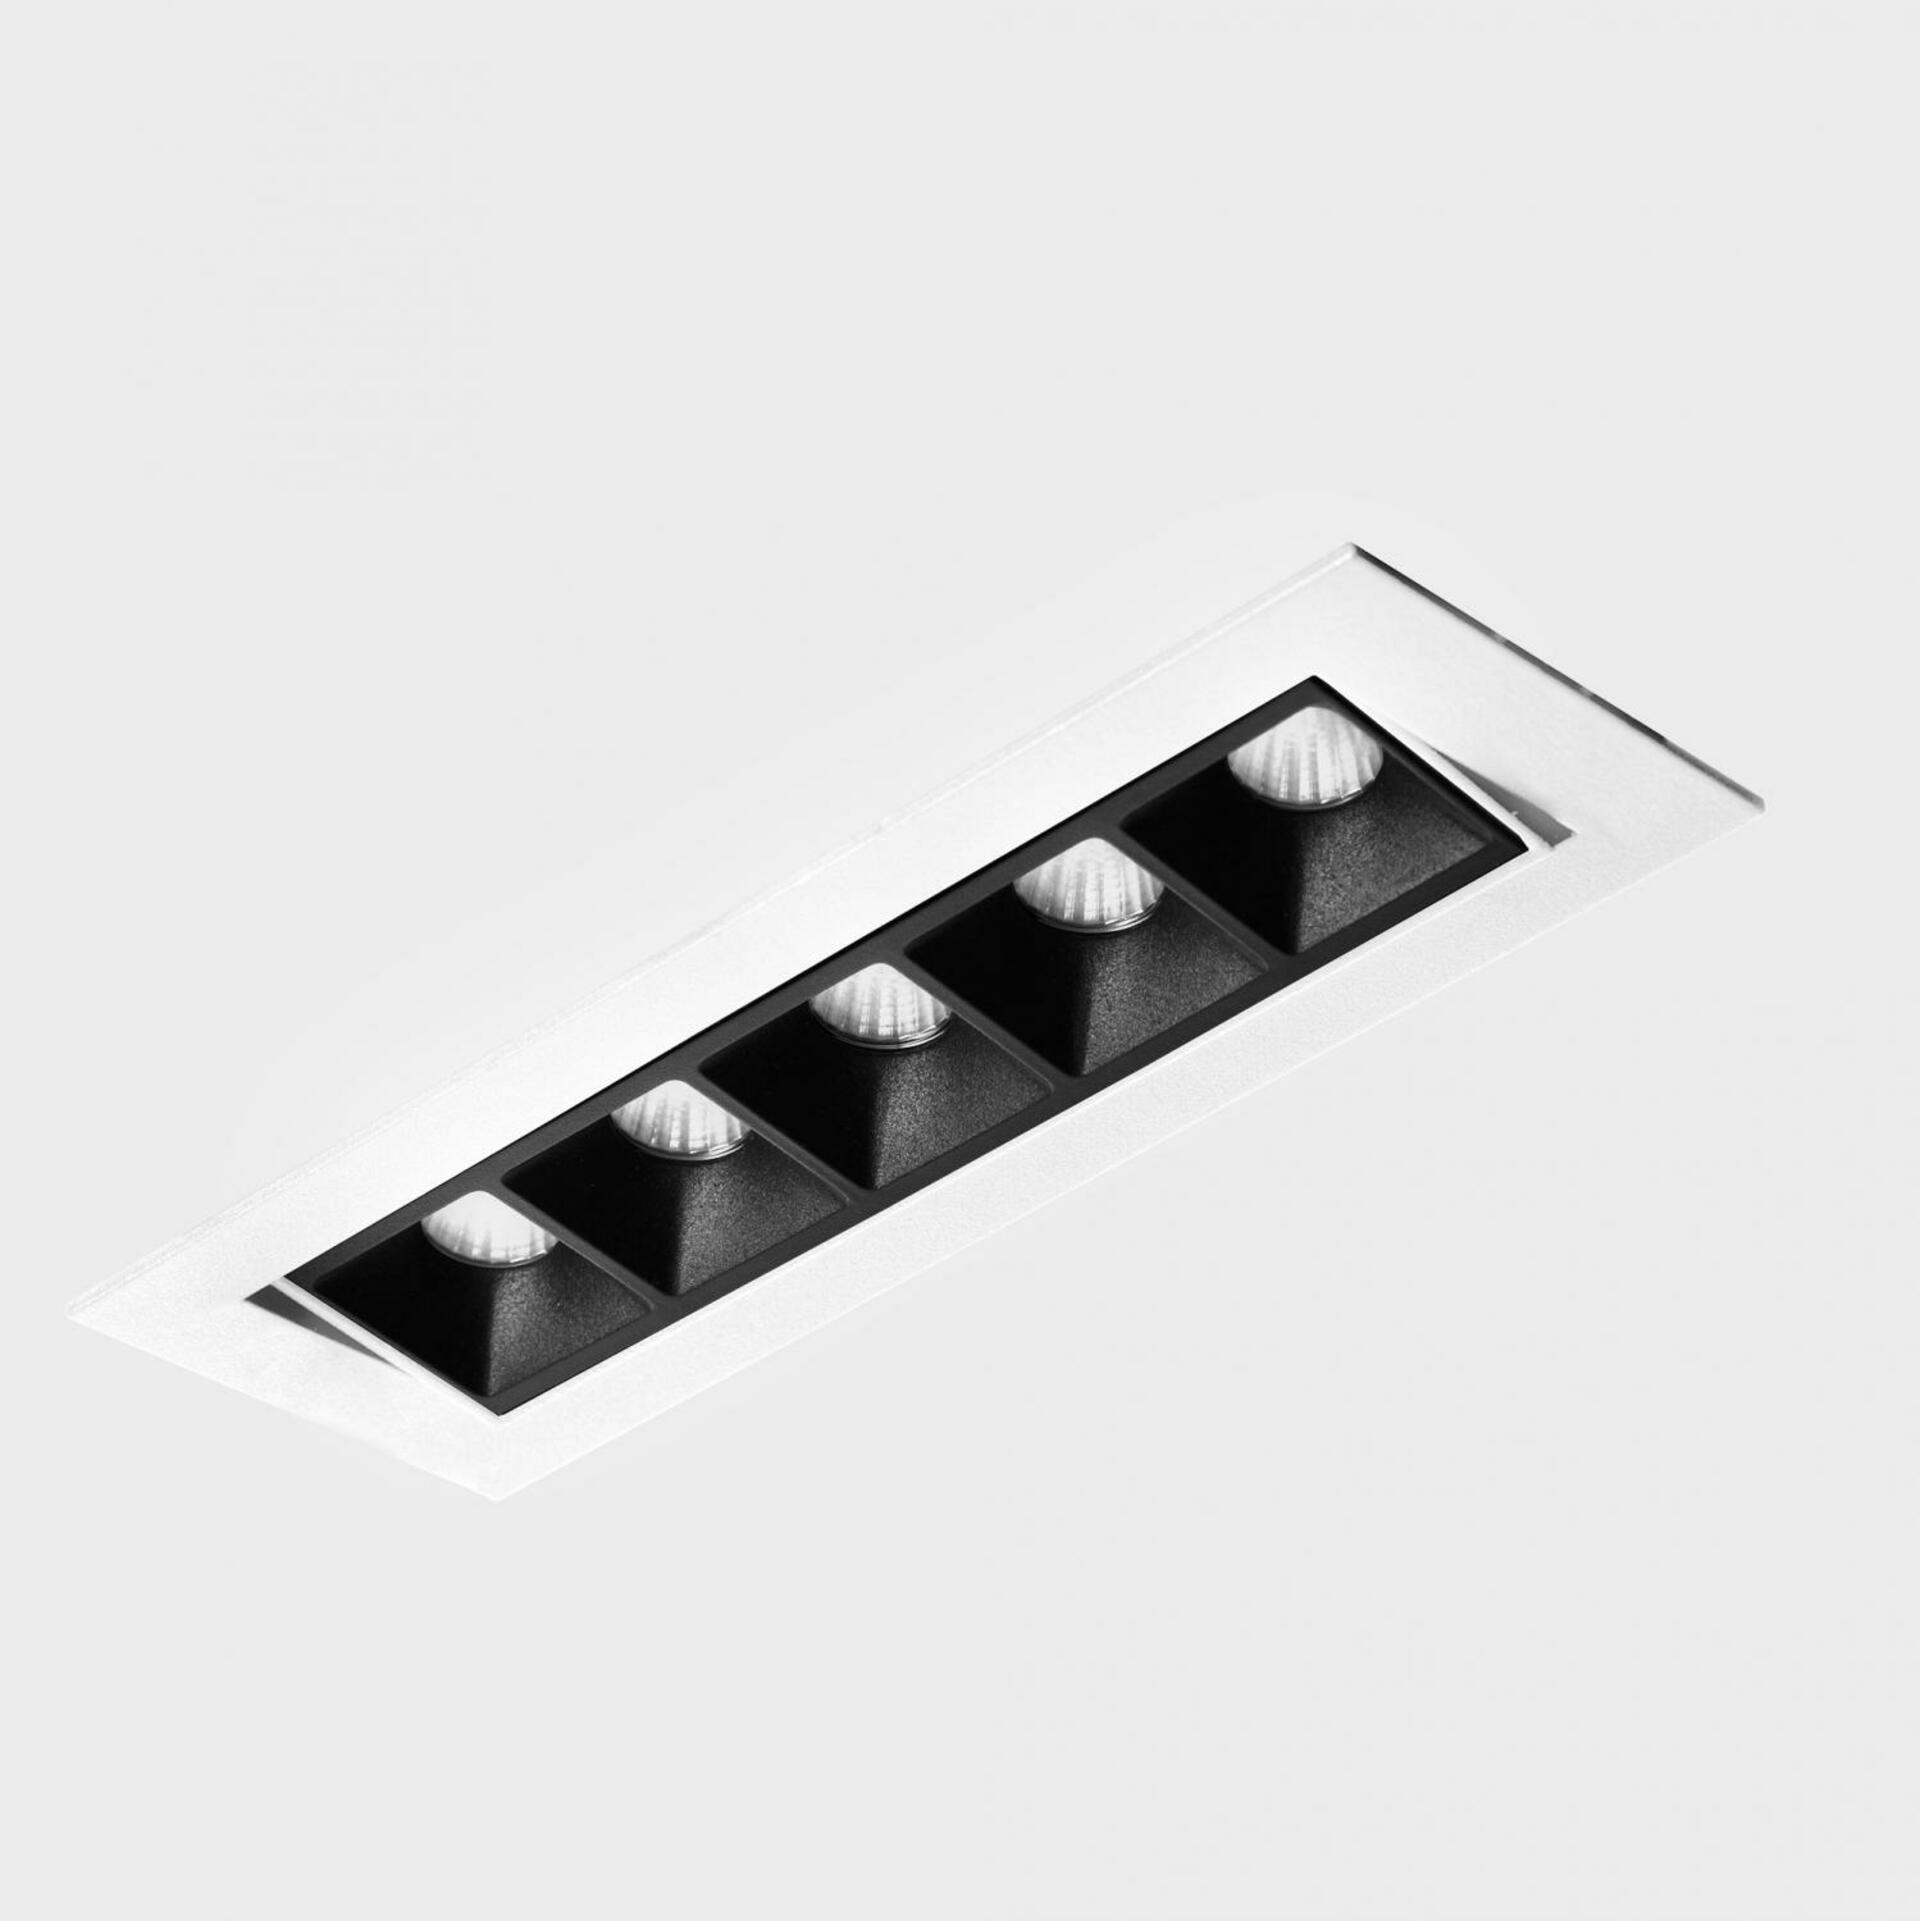 KOHL LIGHTING KOHL-Lighting NSES TILT zapuštěné svítidlo s rámečkem 167x58 mm bílá-černá 10 W CRI 90 2700K DALI